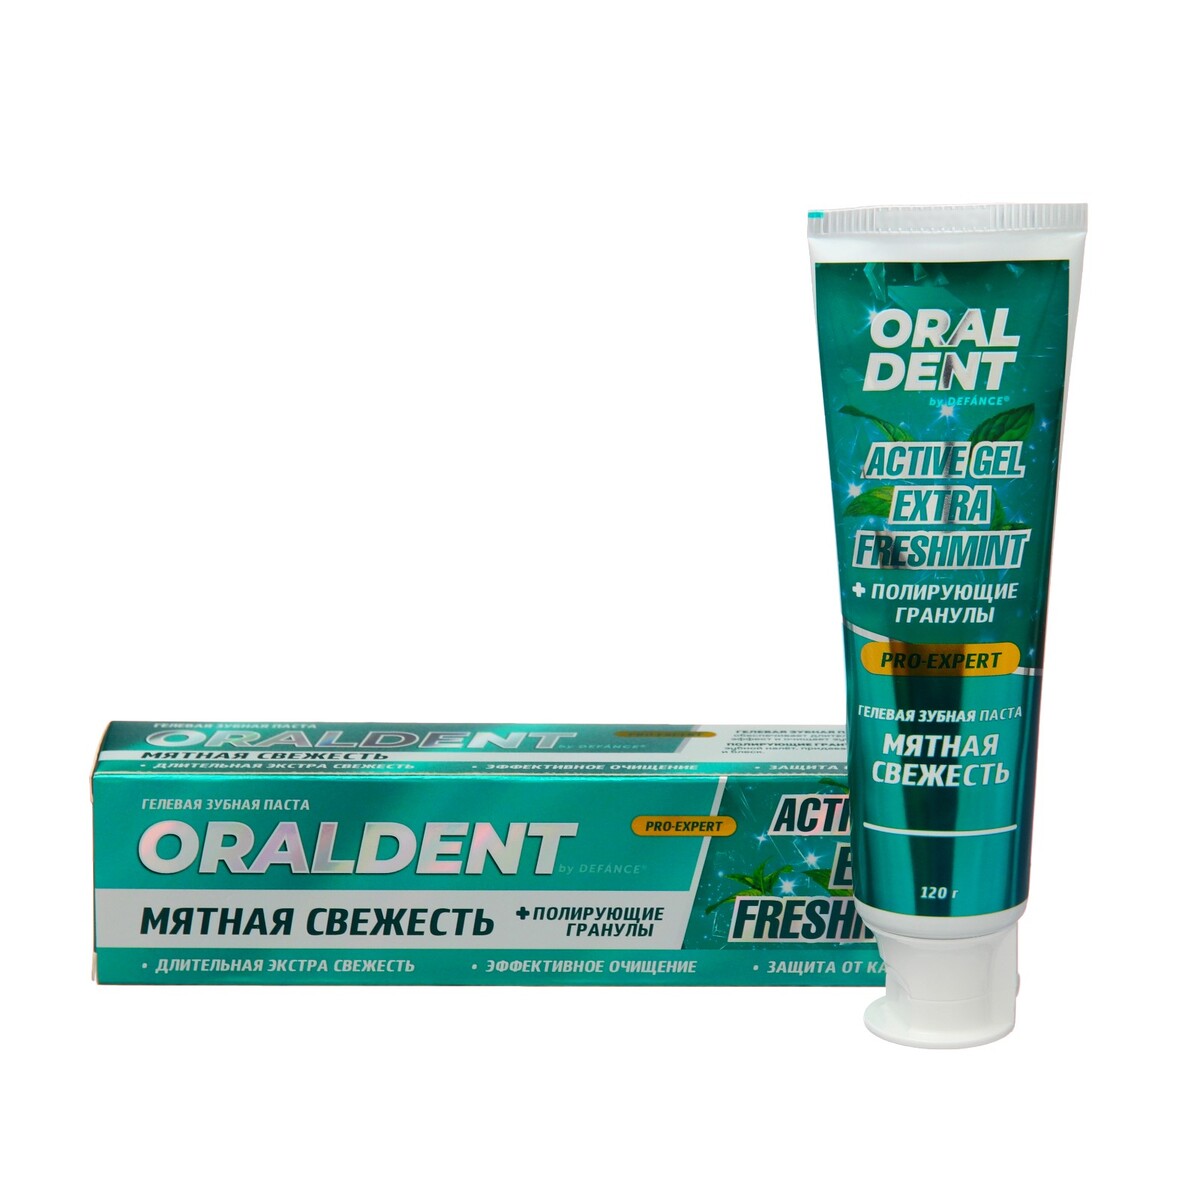 Зубная паста defance oraldent active gel extra freshmint, 120 г сенсодин паста зубная экстра отбеливание 75мл